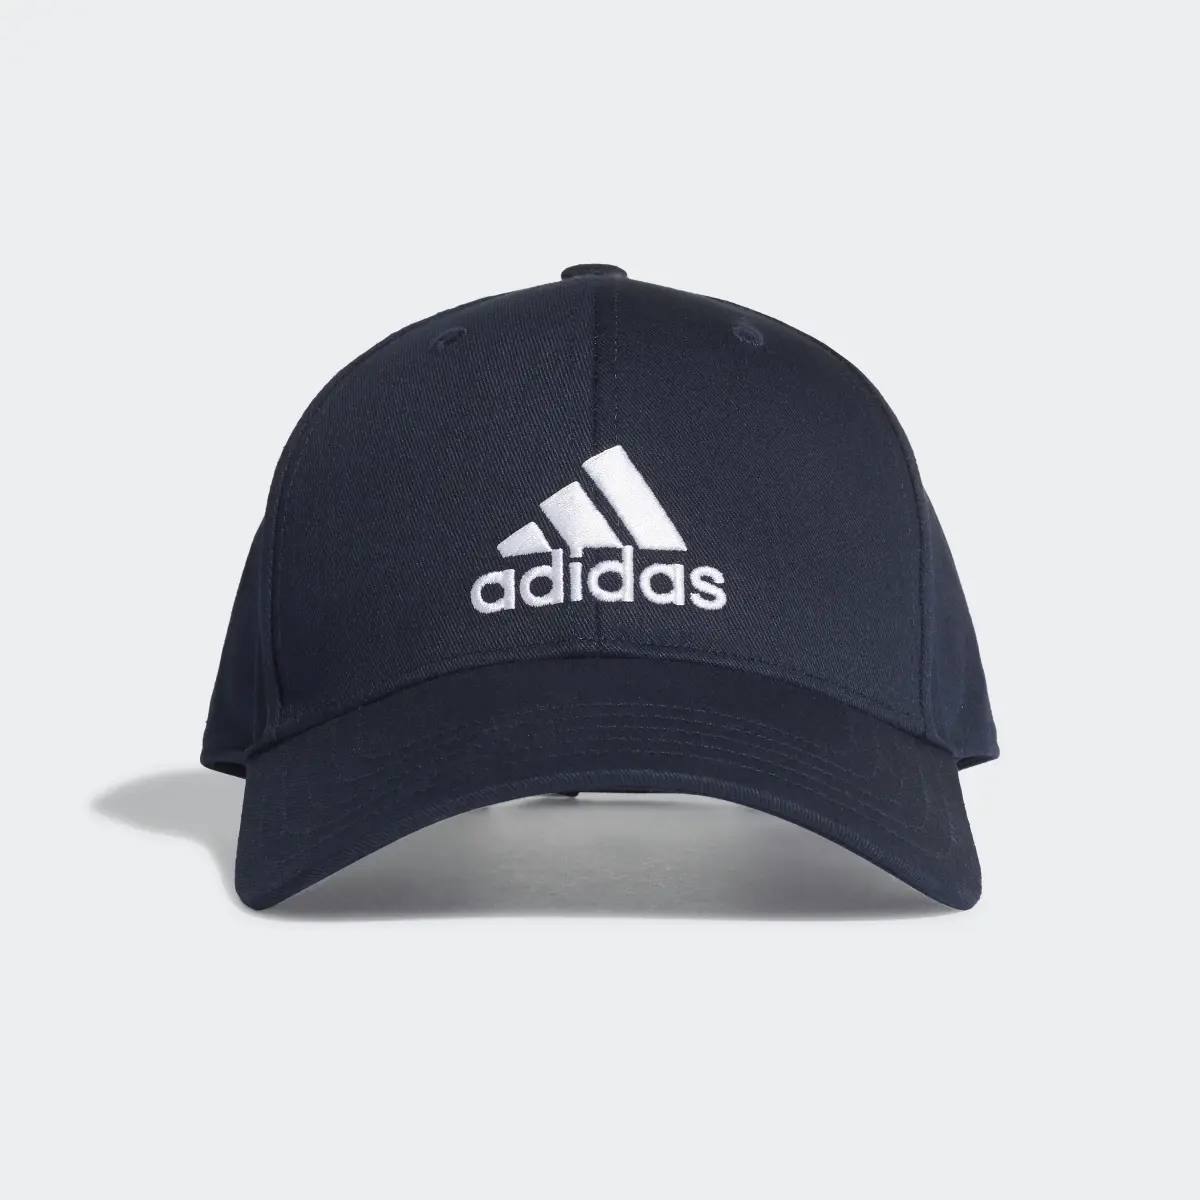 Adidas Baseball Cap. 2